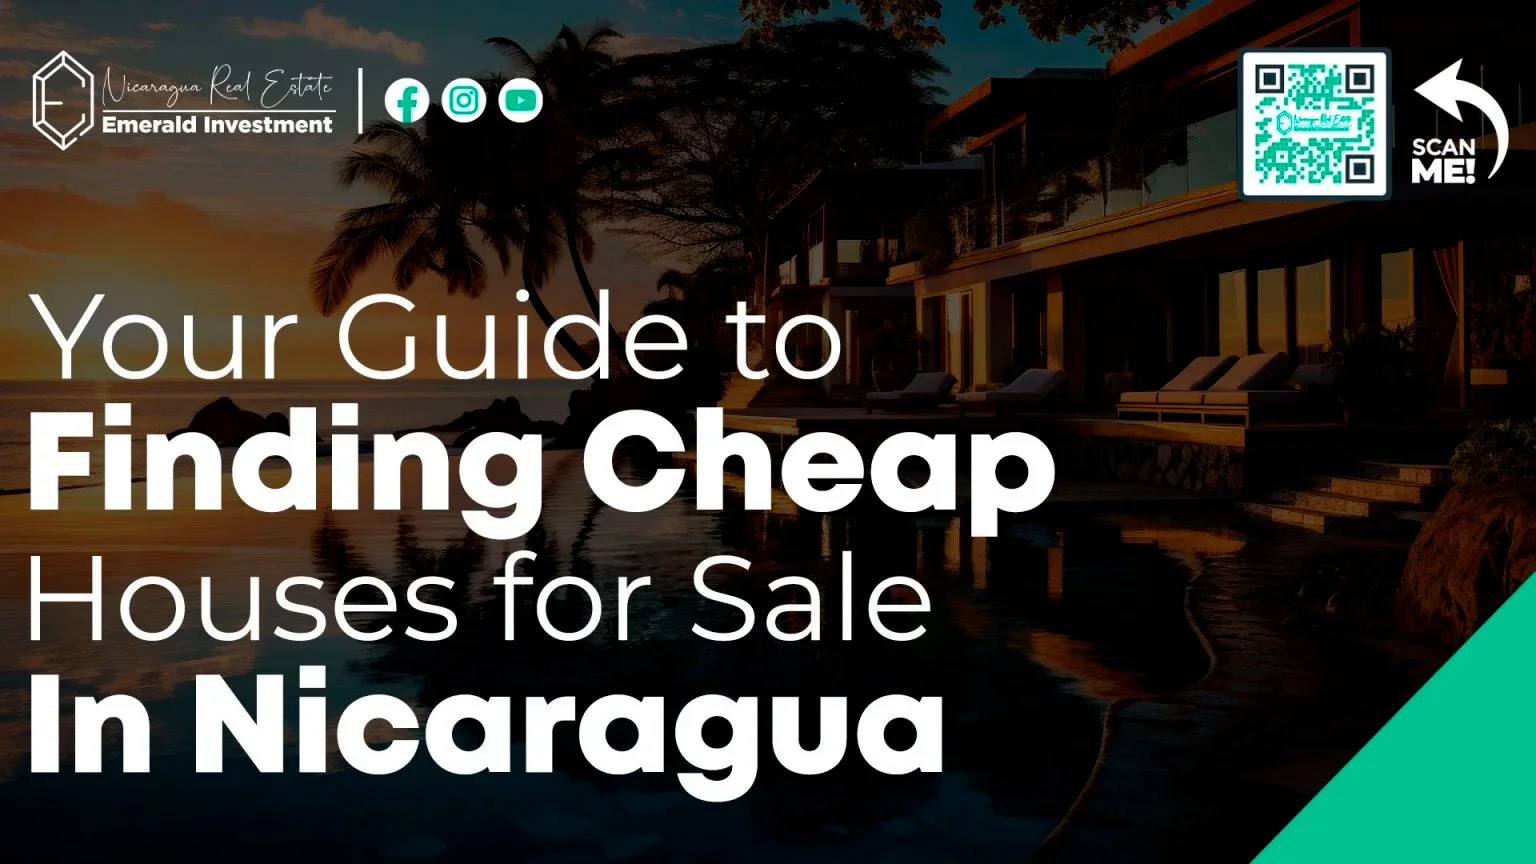 Votre guide pour trouver des maisons bon marché à vendre au Nicaragua